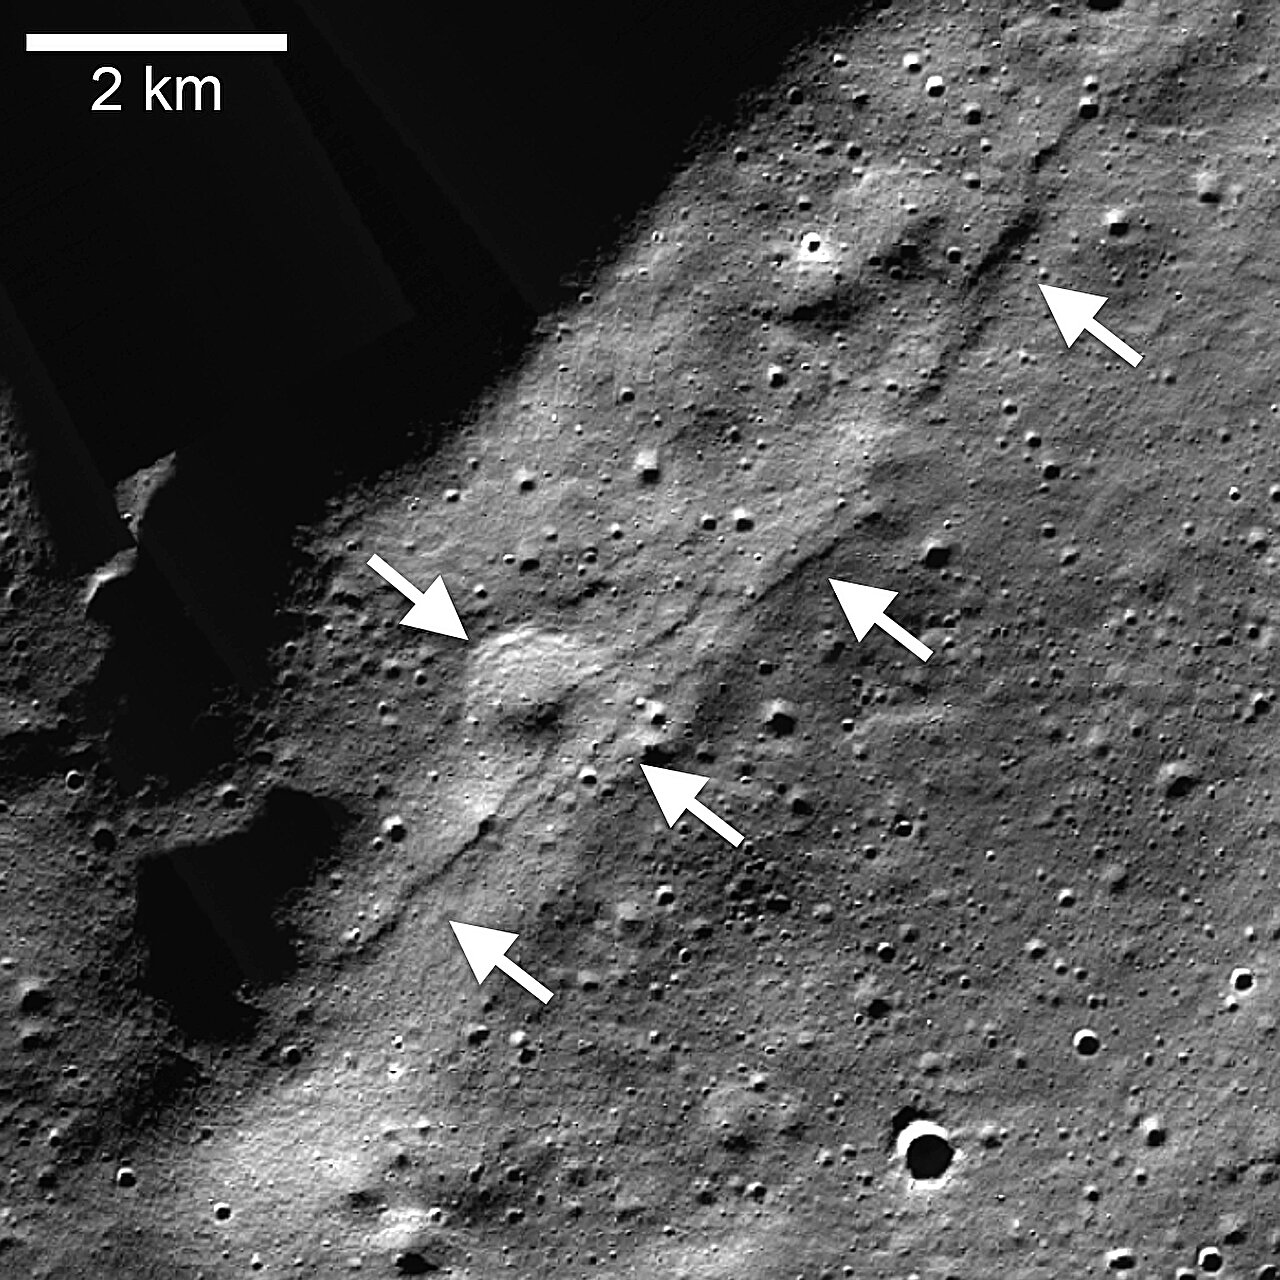 Mosaico da Lunar Reconnaissance Orbiter Camera (LROC), Narrow Angle Camera (NAC) do conjunto Wiechert de escarpas lobadas (setas apontando para a esquerda) próximo ao polo sul lunar. Uma escarpa de falha de empuxo cortou uma cratera degradada de aproximadamente 1 quilômetro (0,6 milha) de diâmetro (seta apontando para a direita)